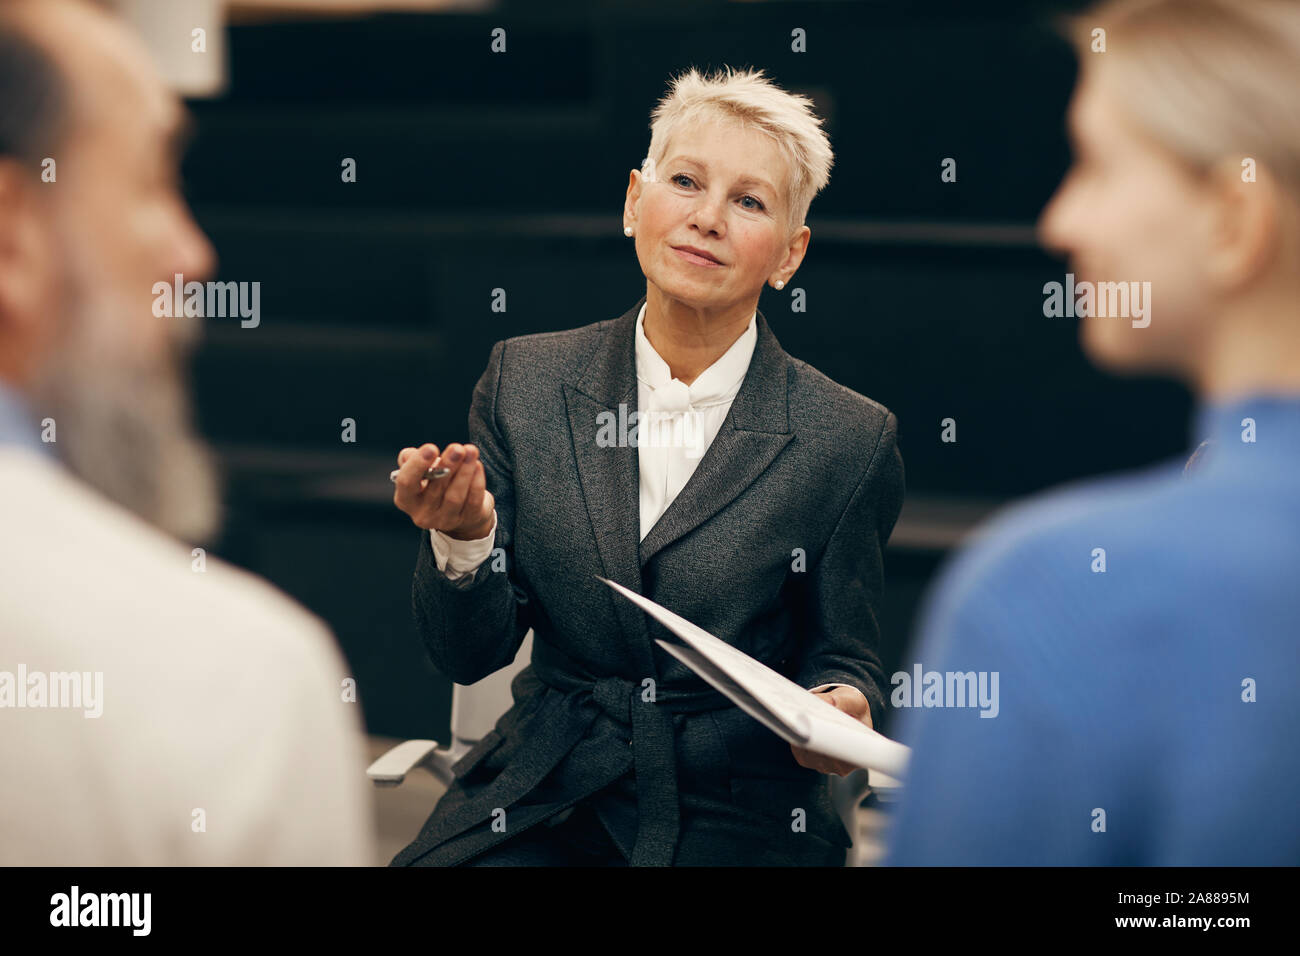 Femme mature avec de courts cheveux blonds holding documents et de parler à ses collègues au cours de réunion Banque D'Images